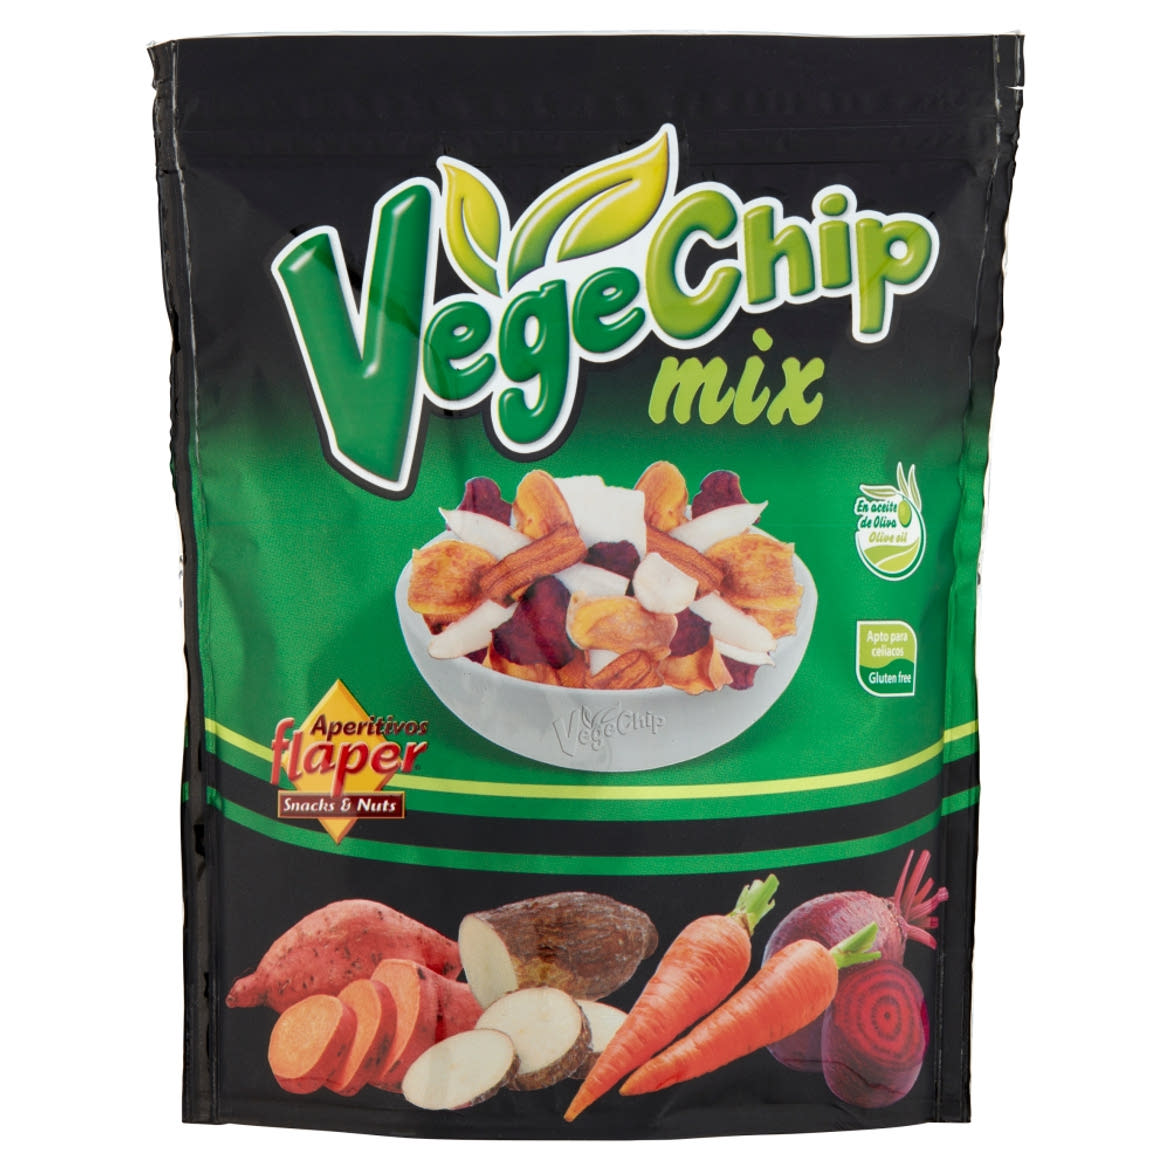 Aperitivos Flaper vegyes zöldség chips 70 g